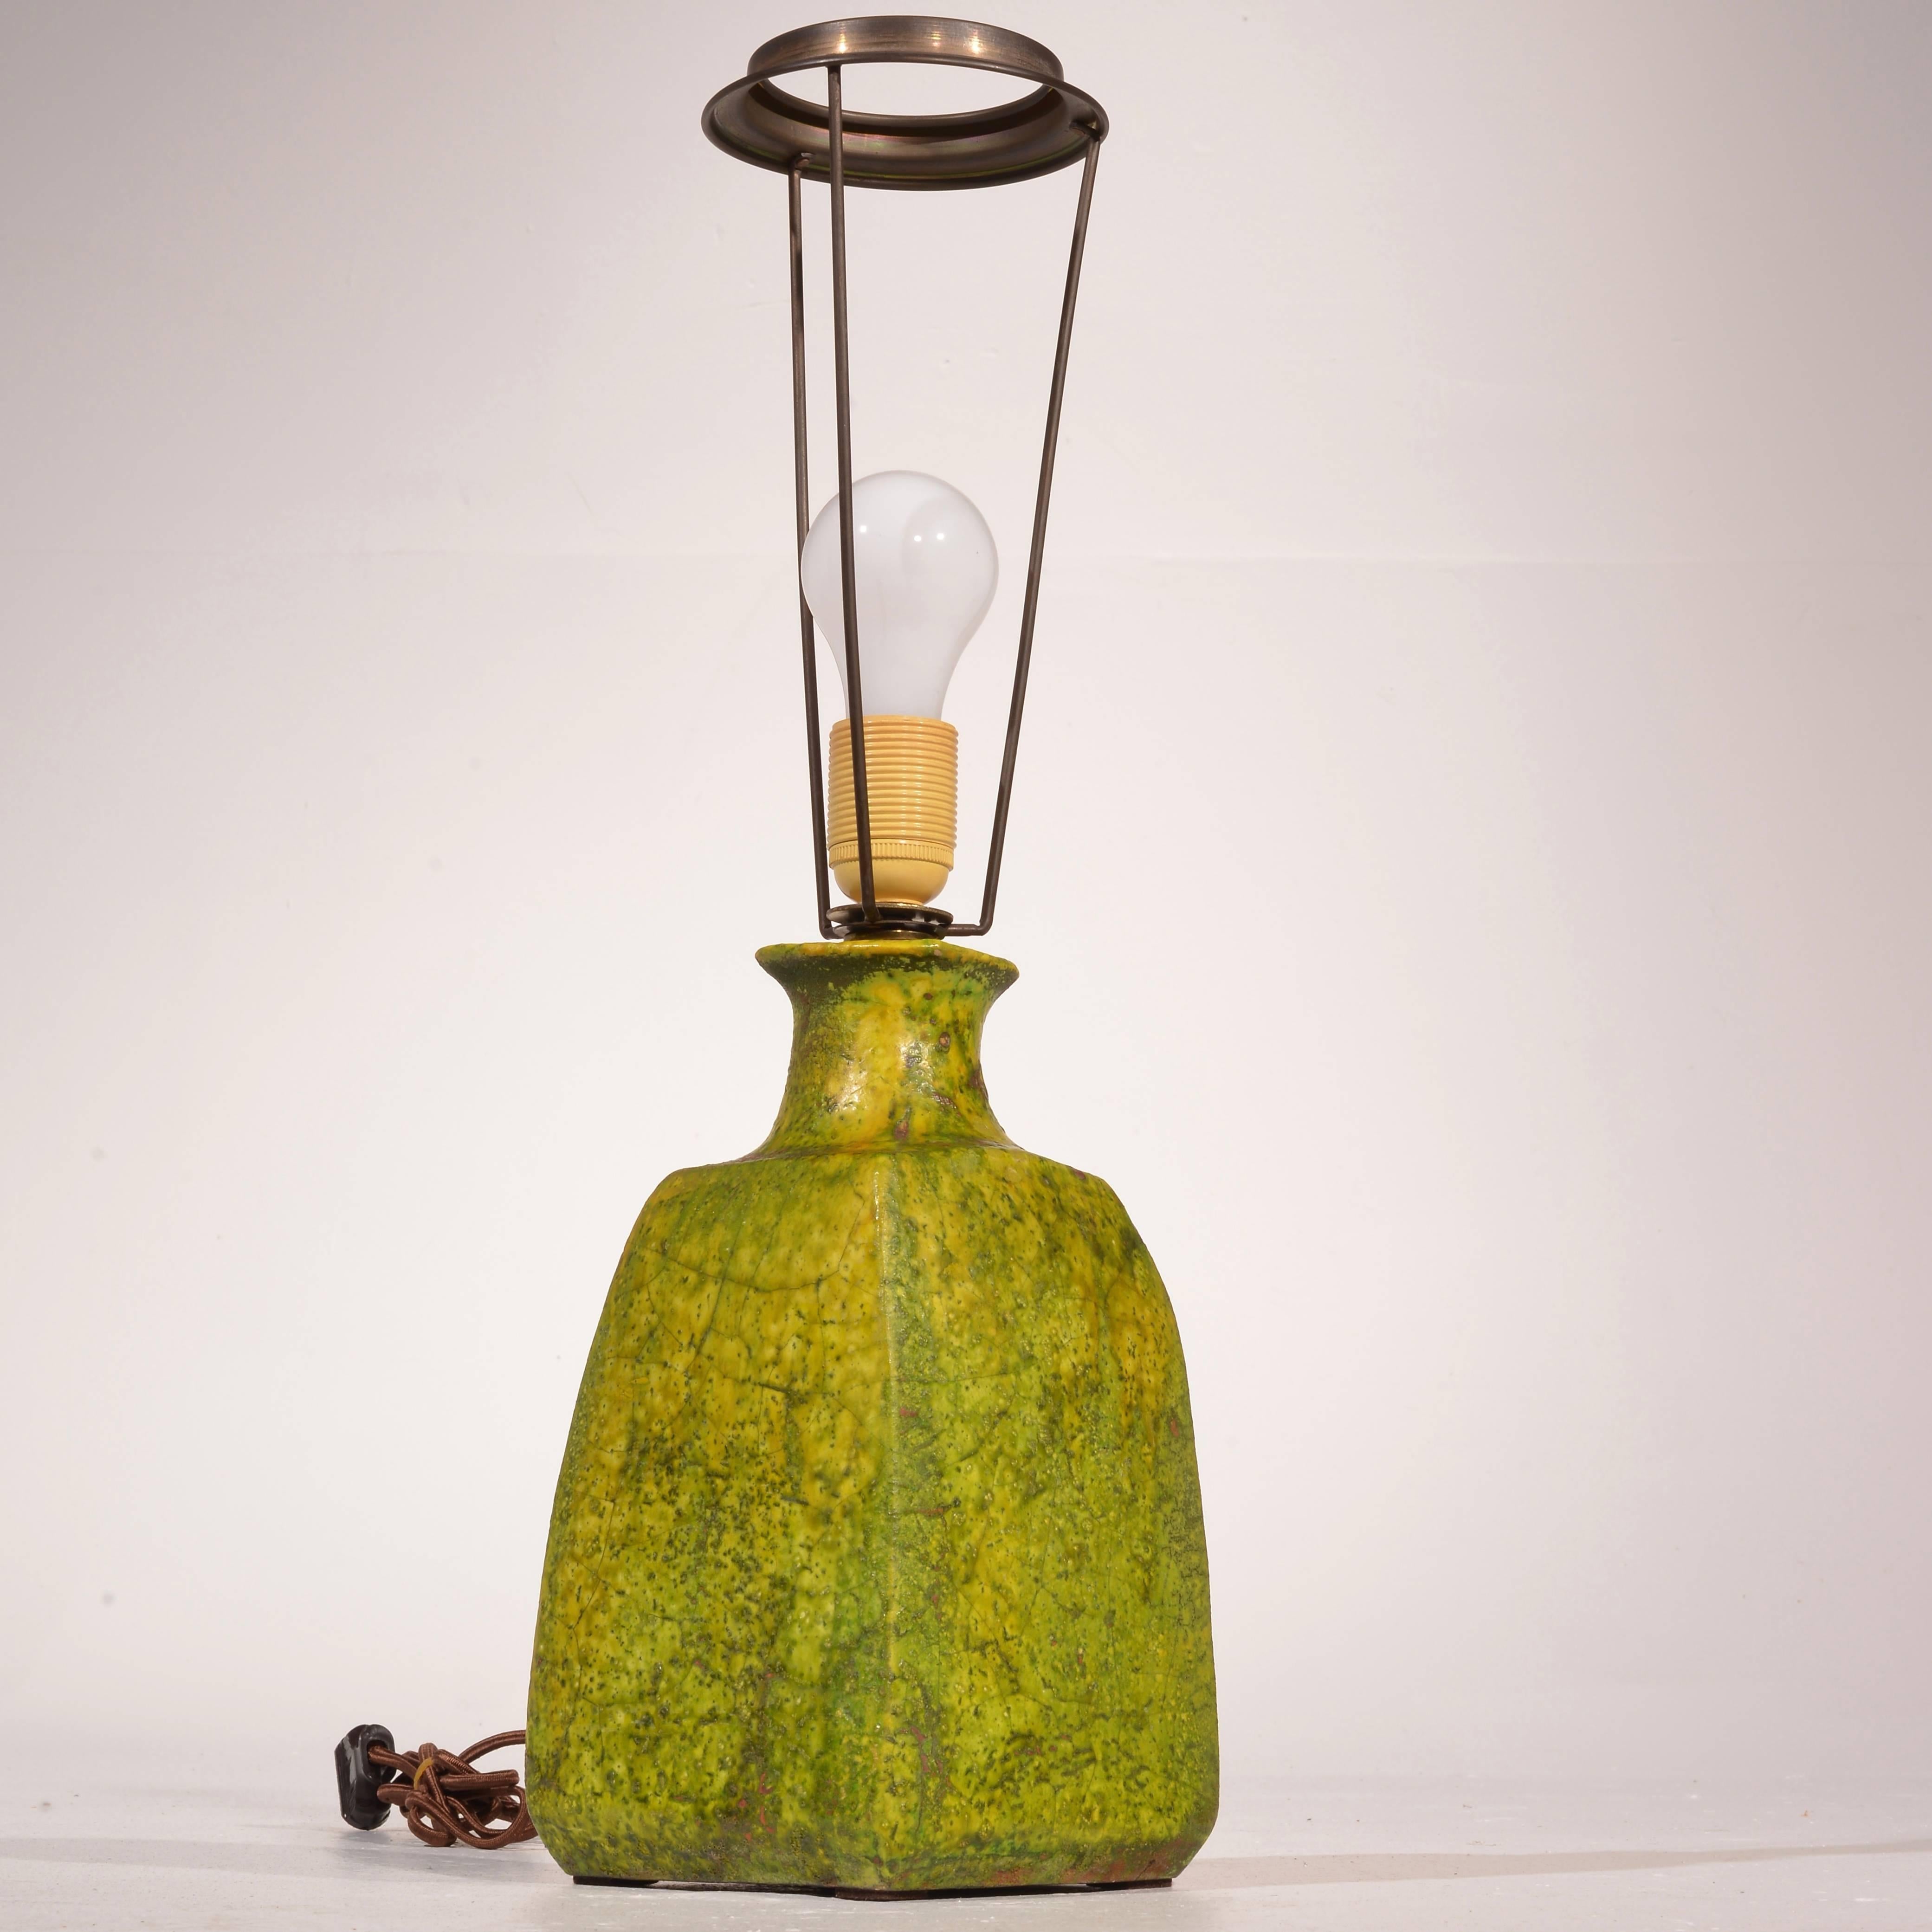 Italian studio ceramic table lamp in green by Marcello Fantoni, circa 1950.
Newly rewired.